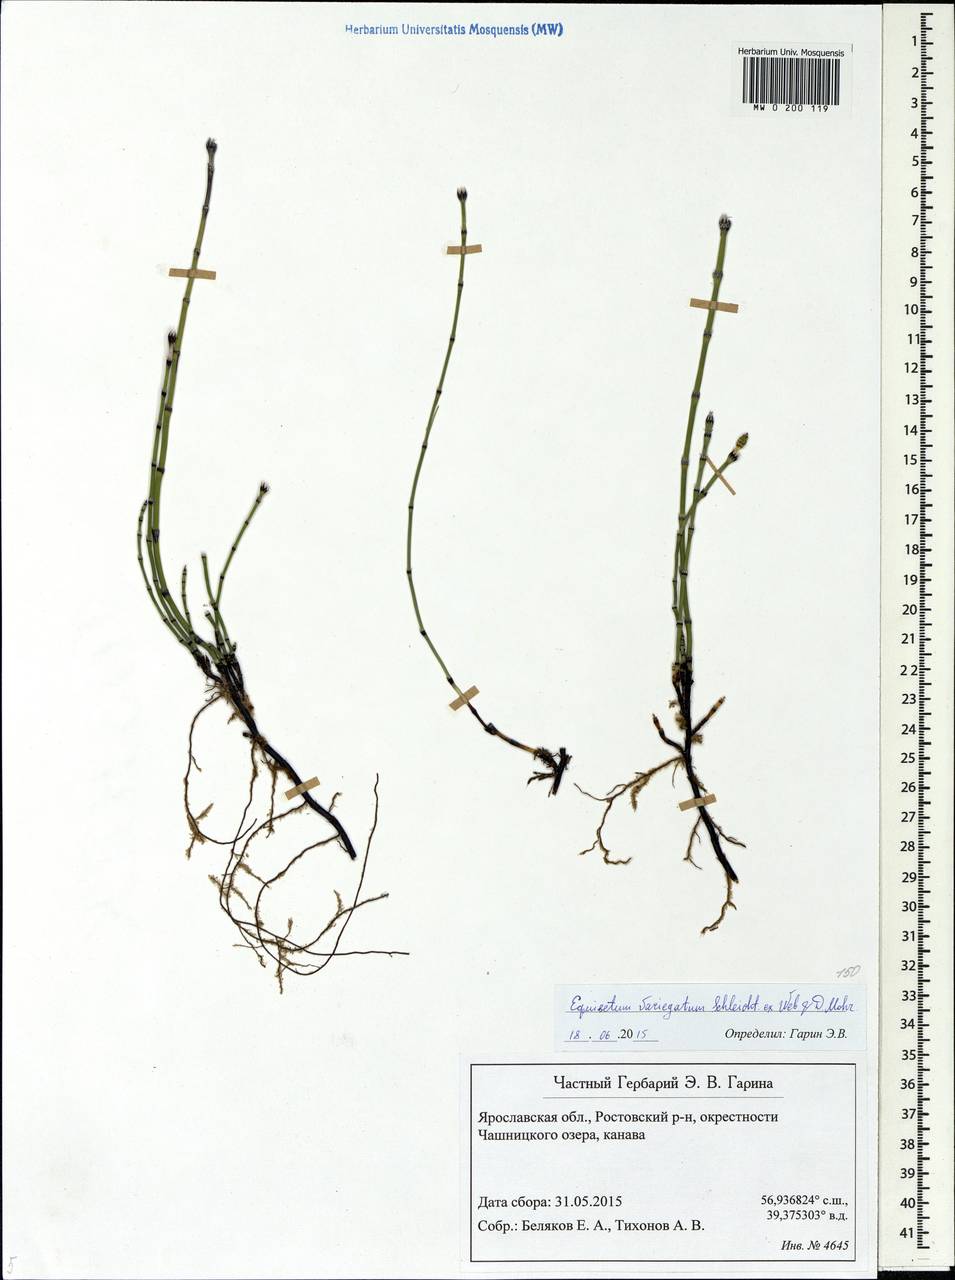 Equisetum variegatum Schleich., Eastern Europe, Central forest region (E5) (Russia)